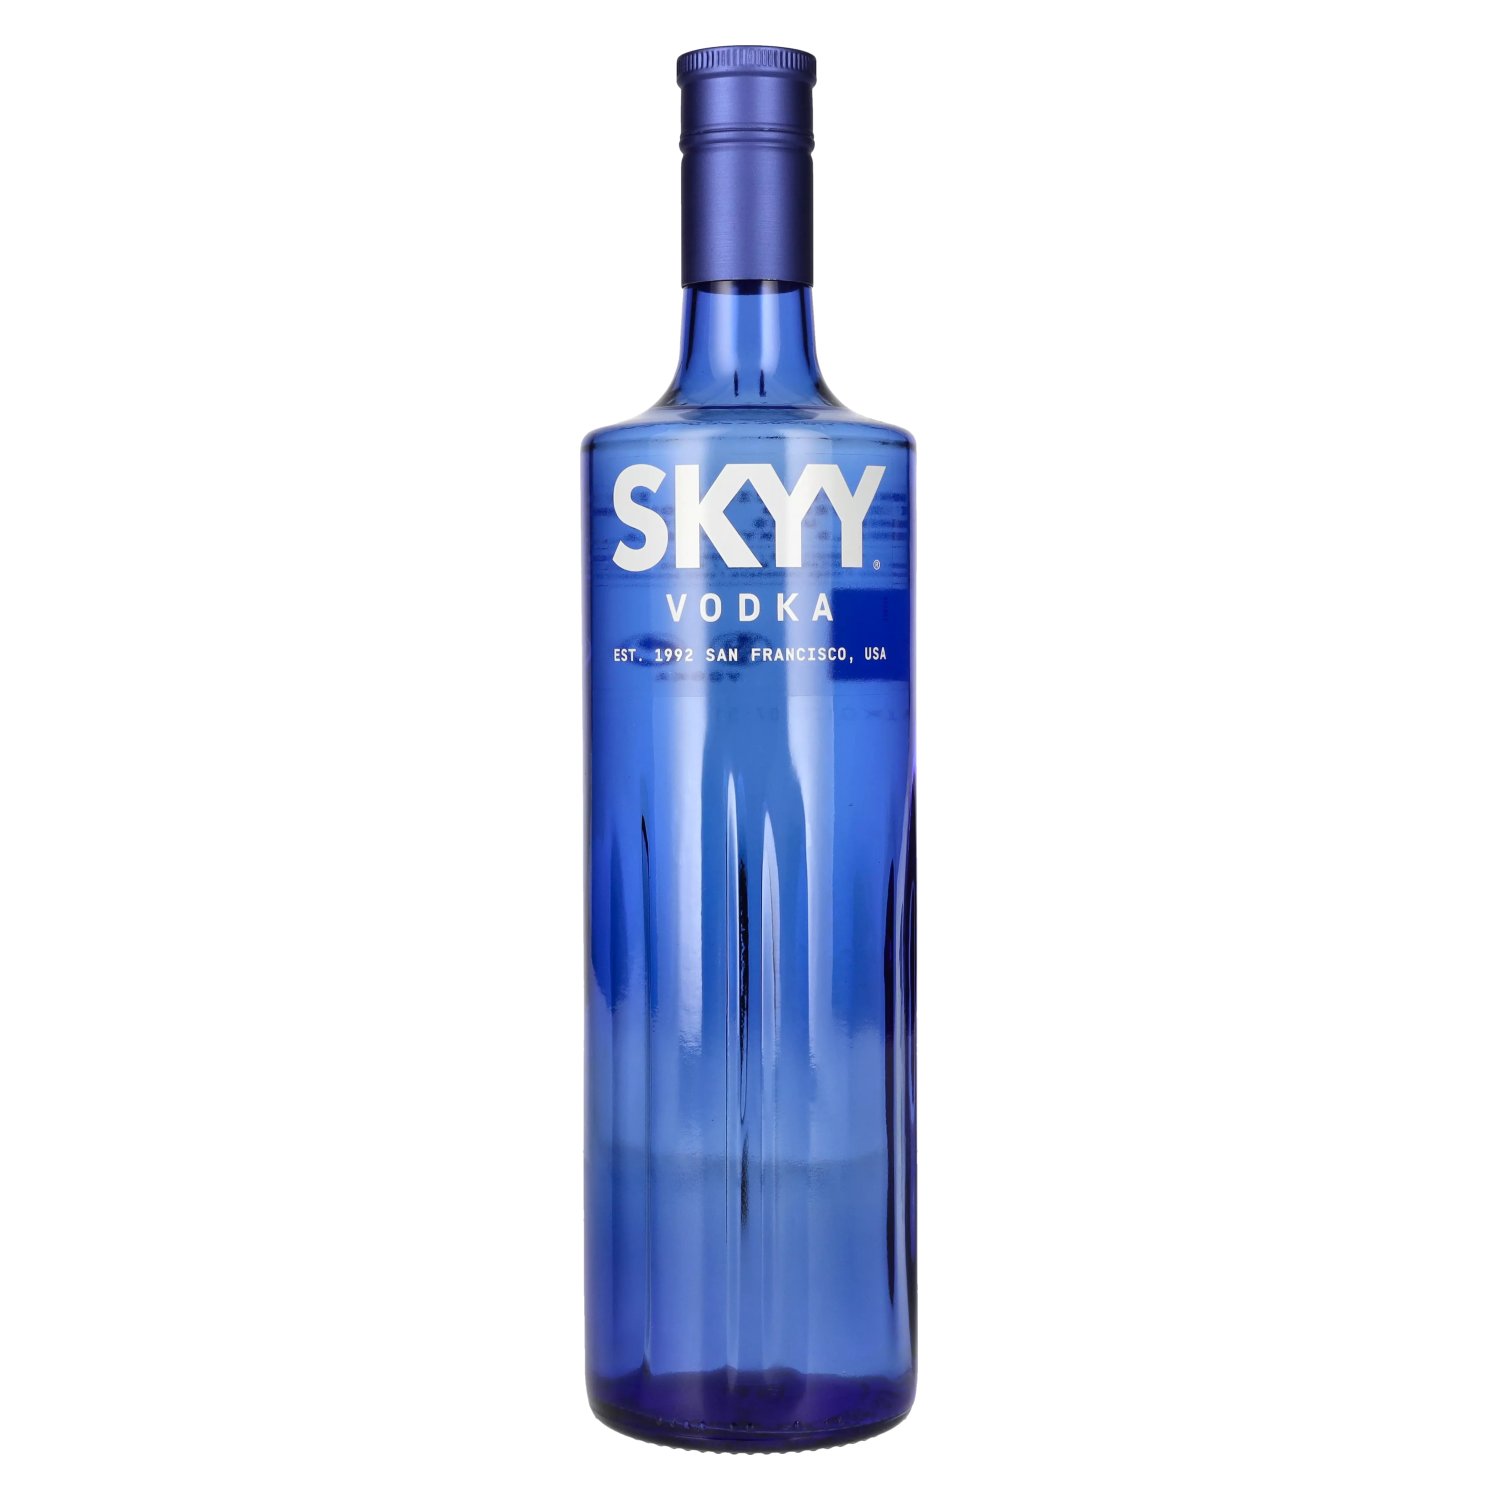 Skyy Vodka 40% Vol. 1l - delicando